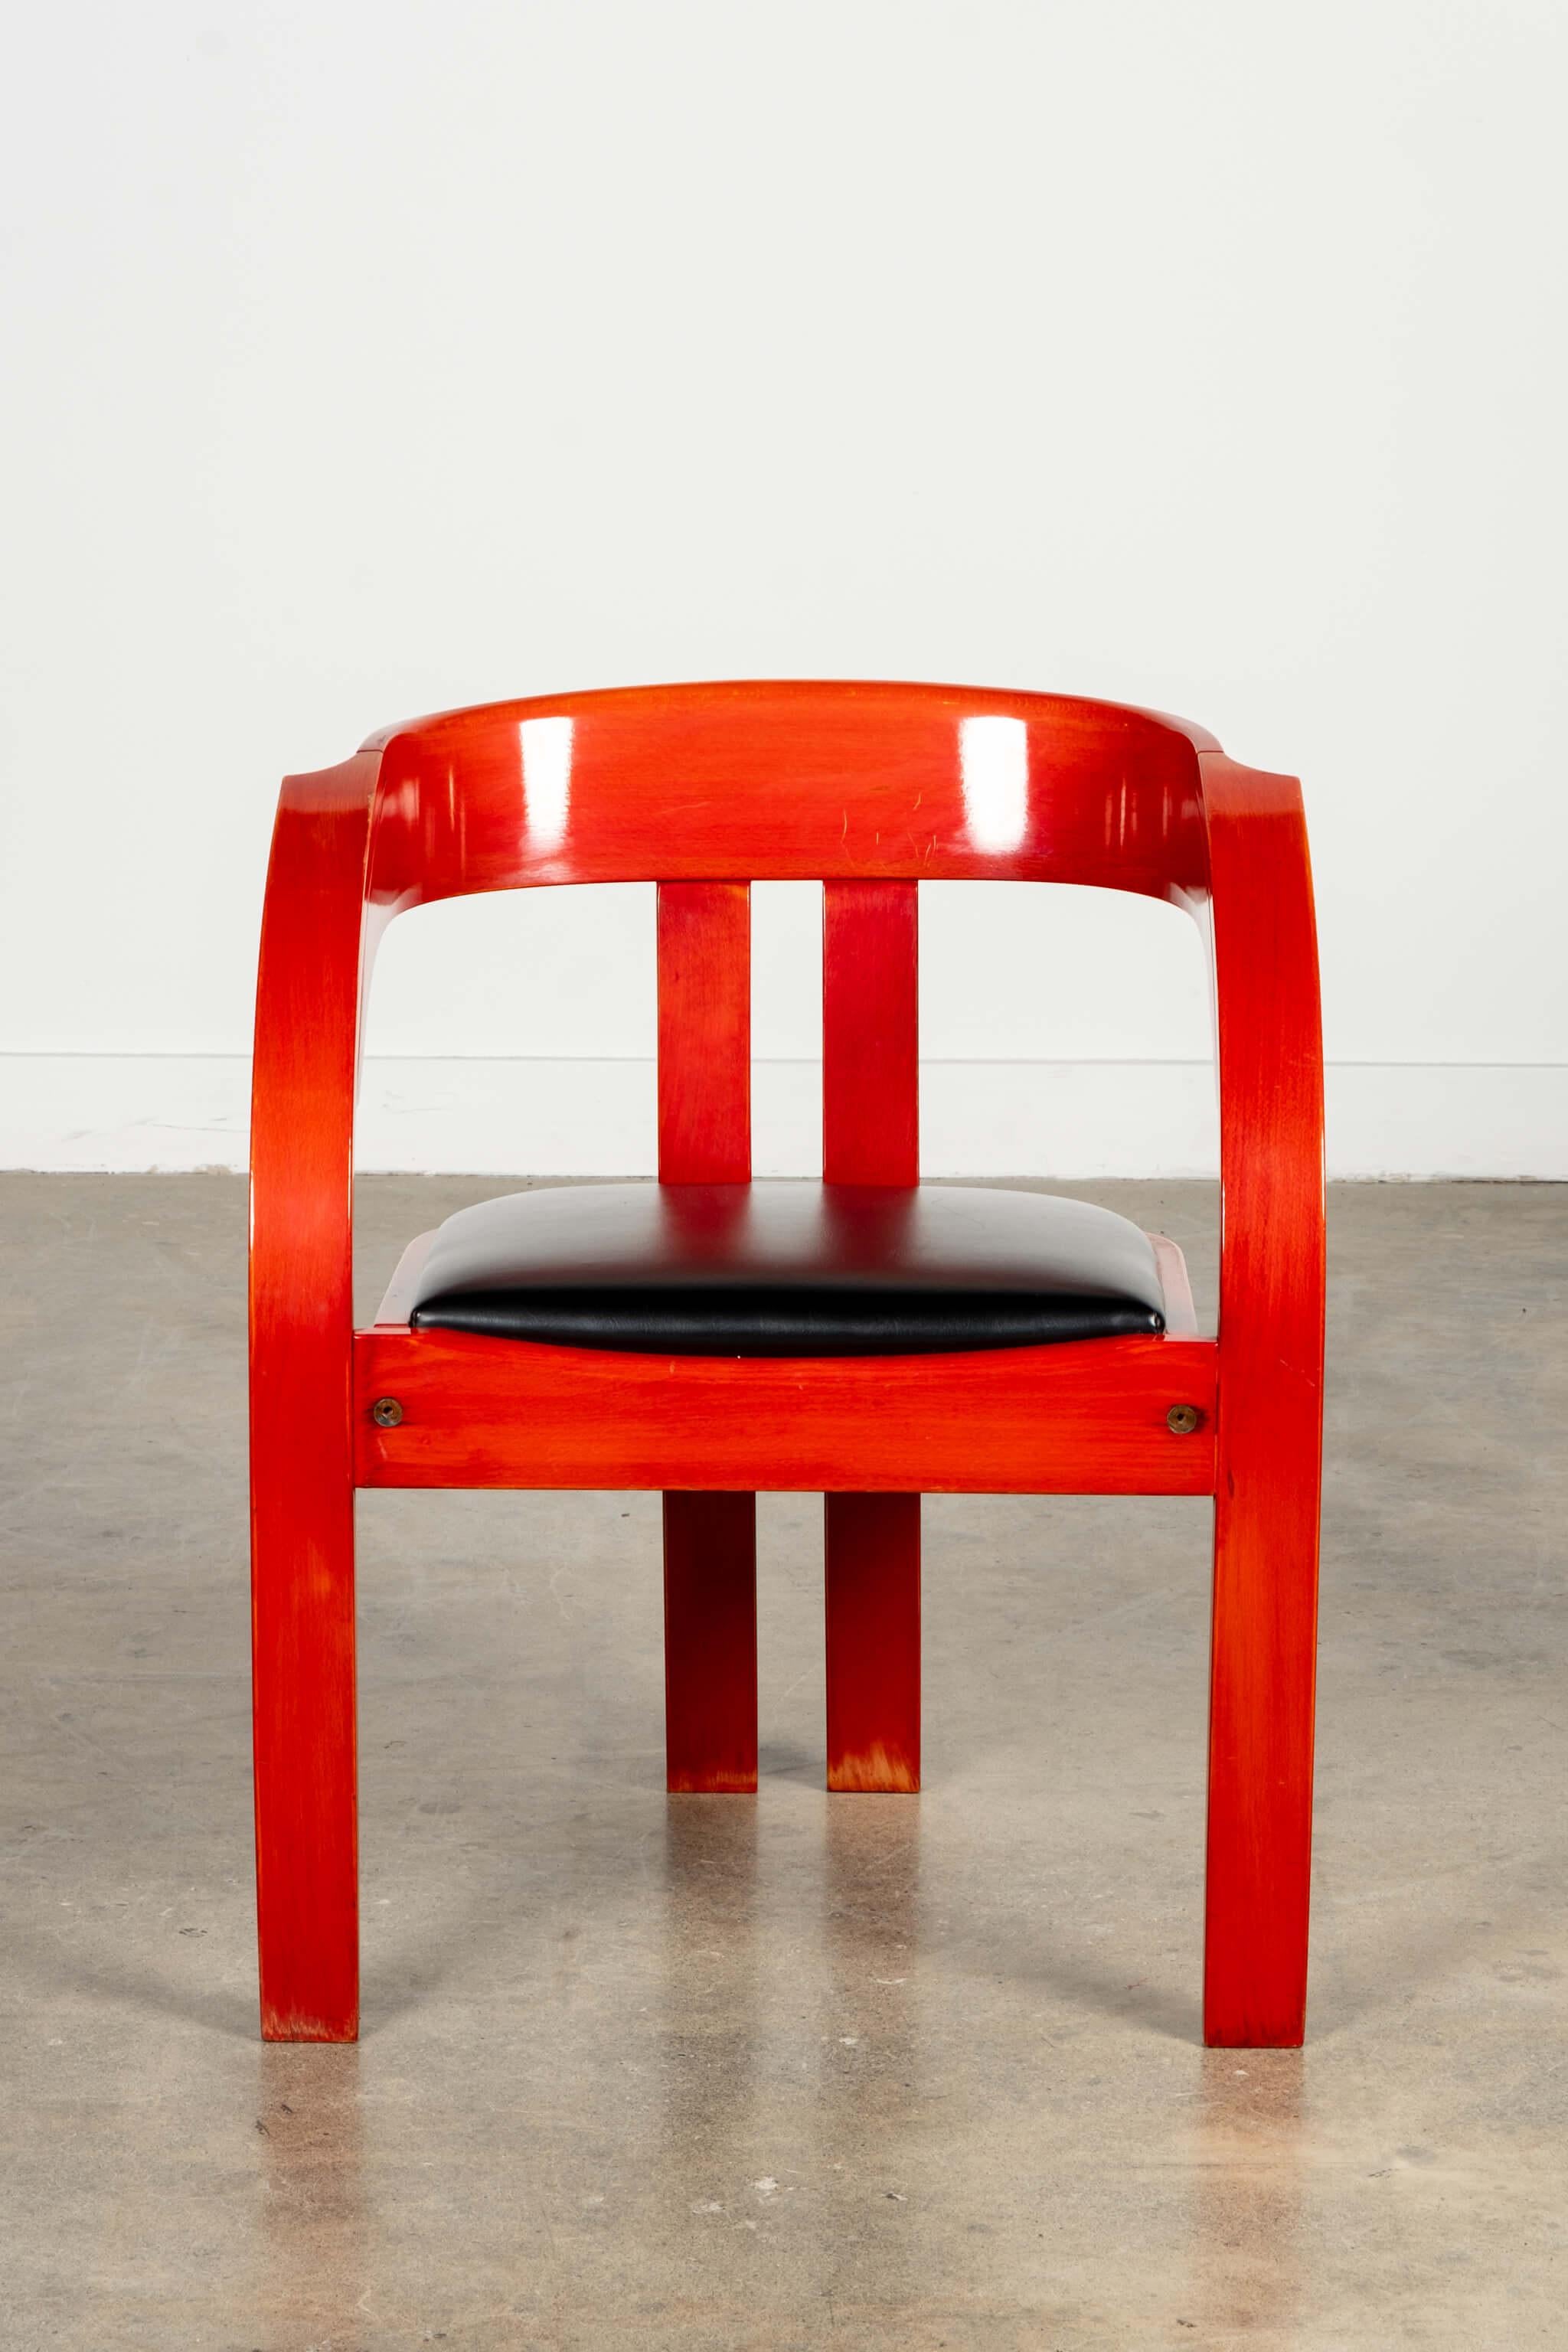 Conçu par Giovanni Battista Bassi pour Poltronova en 1964, le fauteuil Elisa est doté d'accoudoirs courbes spectaculaires sur sa structure robuste. La finition laquée rouge et l'assise en cuir noir apportent une touche dramatique à l'ensemble.